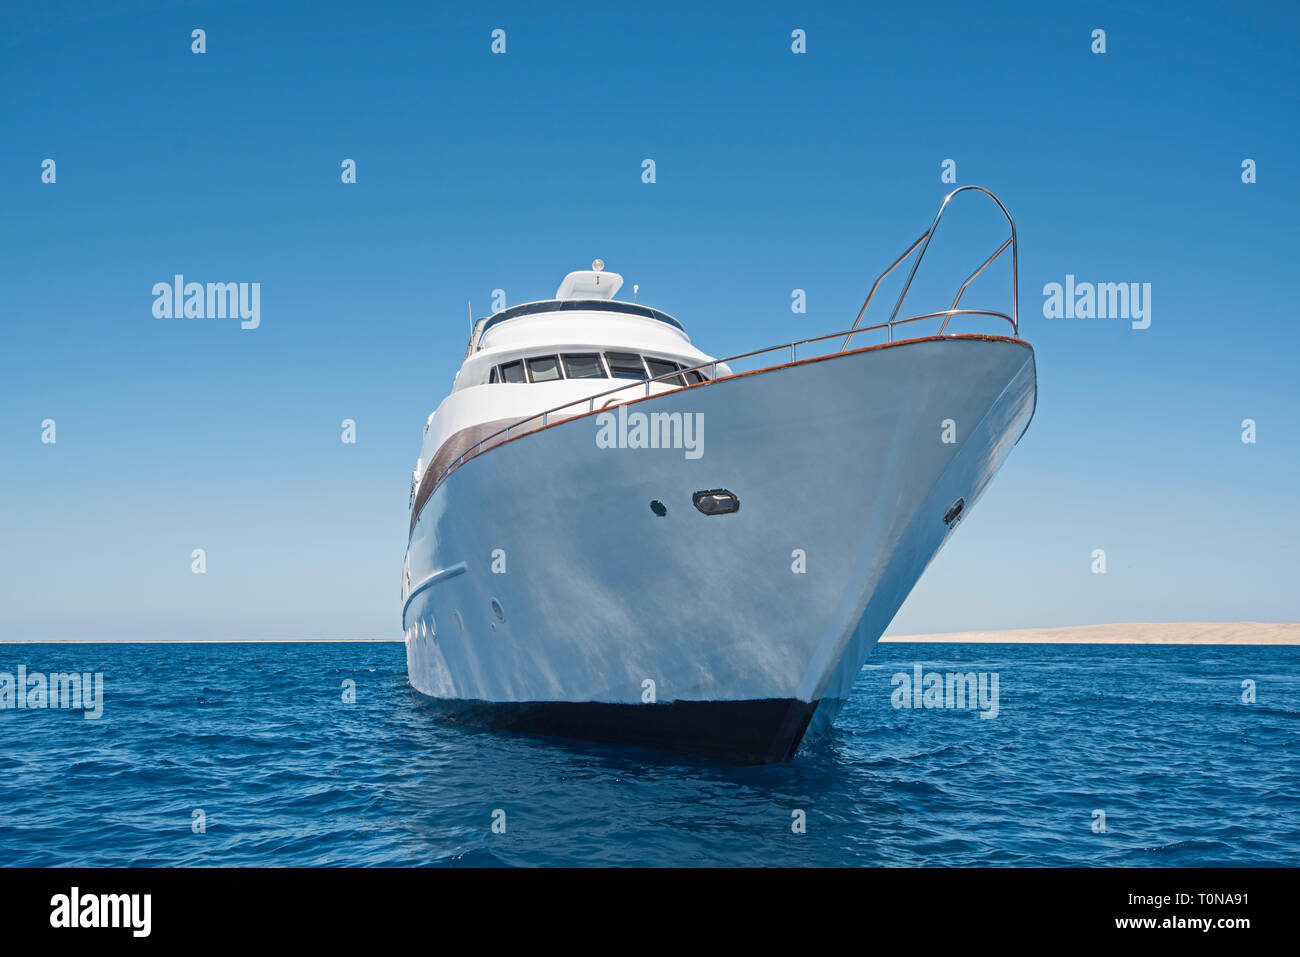 Der Bogen der großen Luxus Motor Yacht segeln auf tropischen Meer Ozean mit blauem Himmel Hintergrund Stockfoto